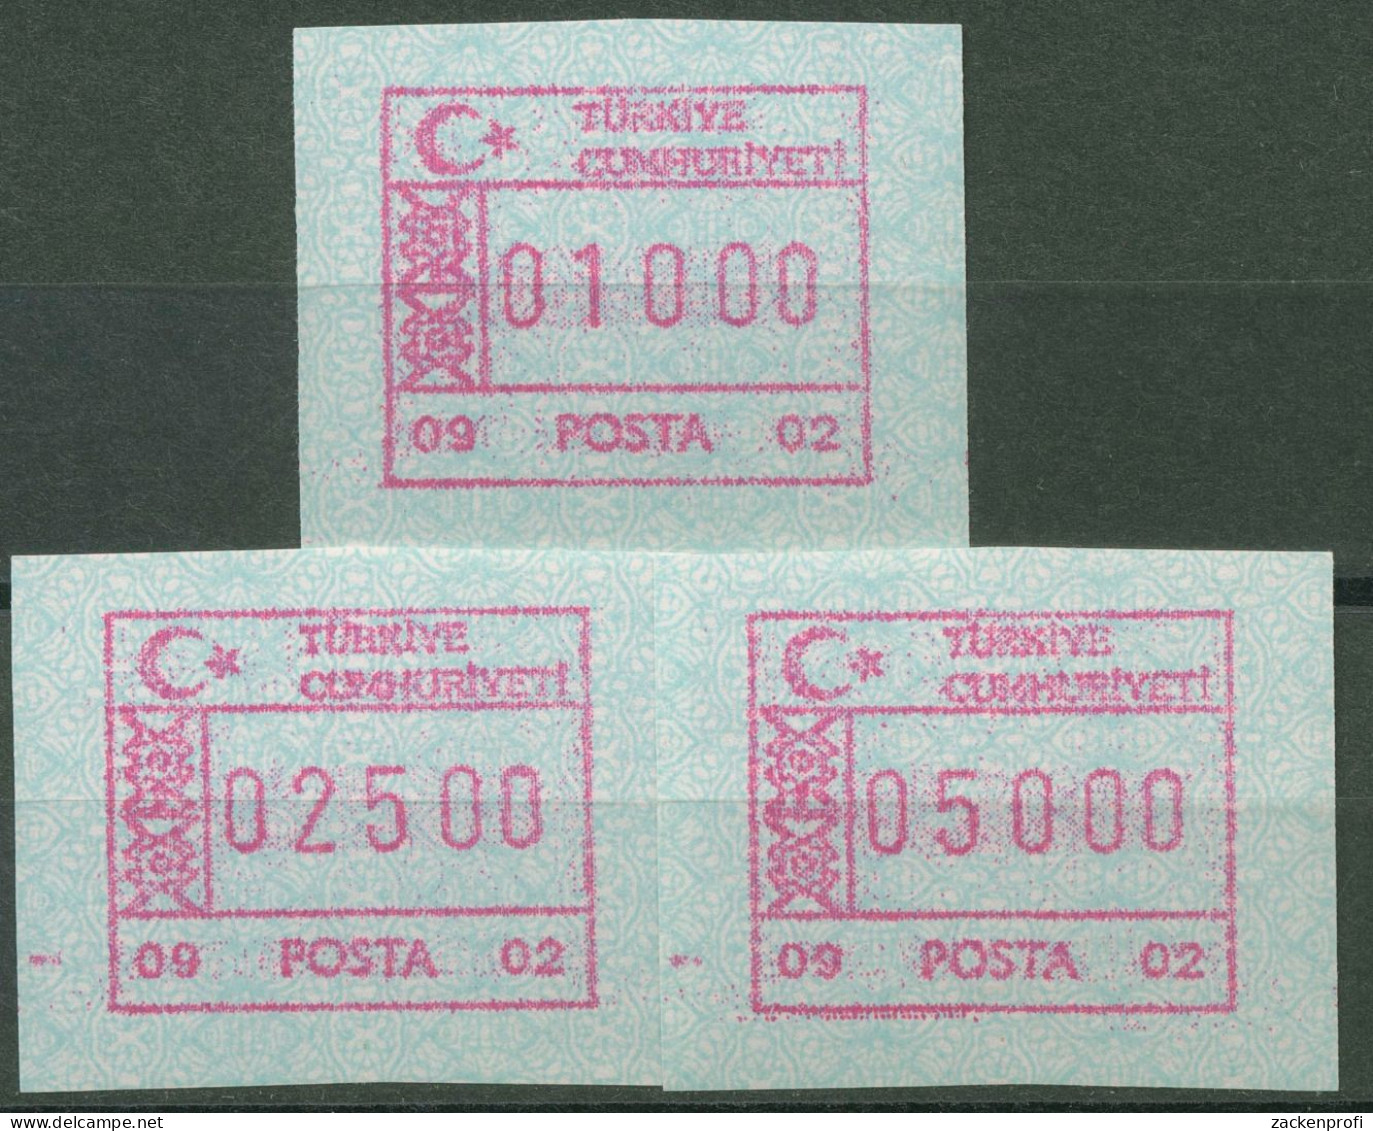 Türkei ATM 1992 Ornamente Automat 09 02, Satz 3 Werte ATM 2.6 S Postfrisch - Distributori